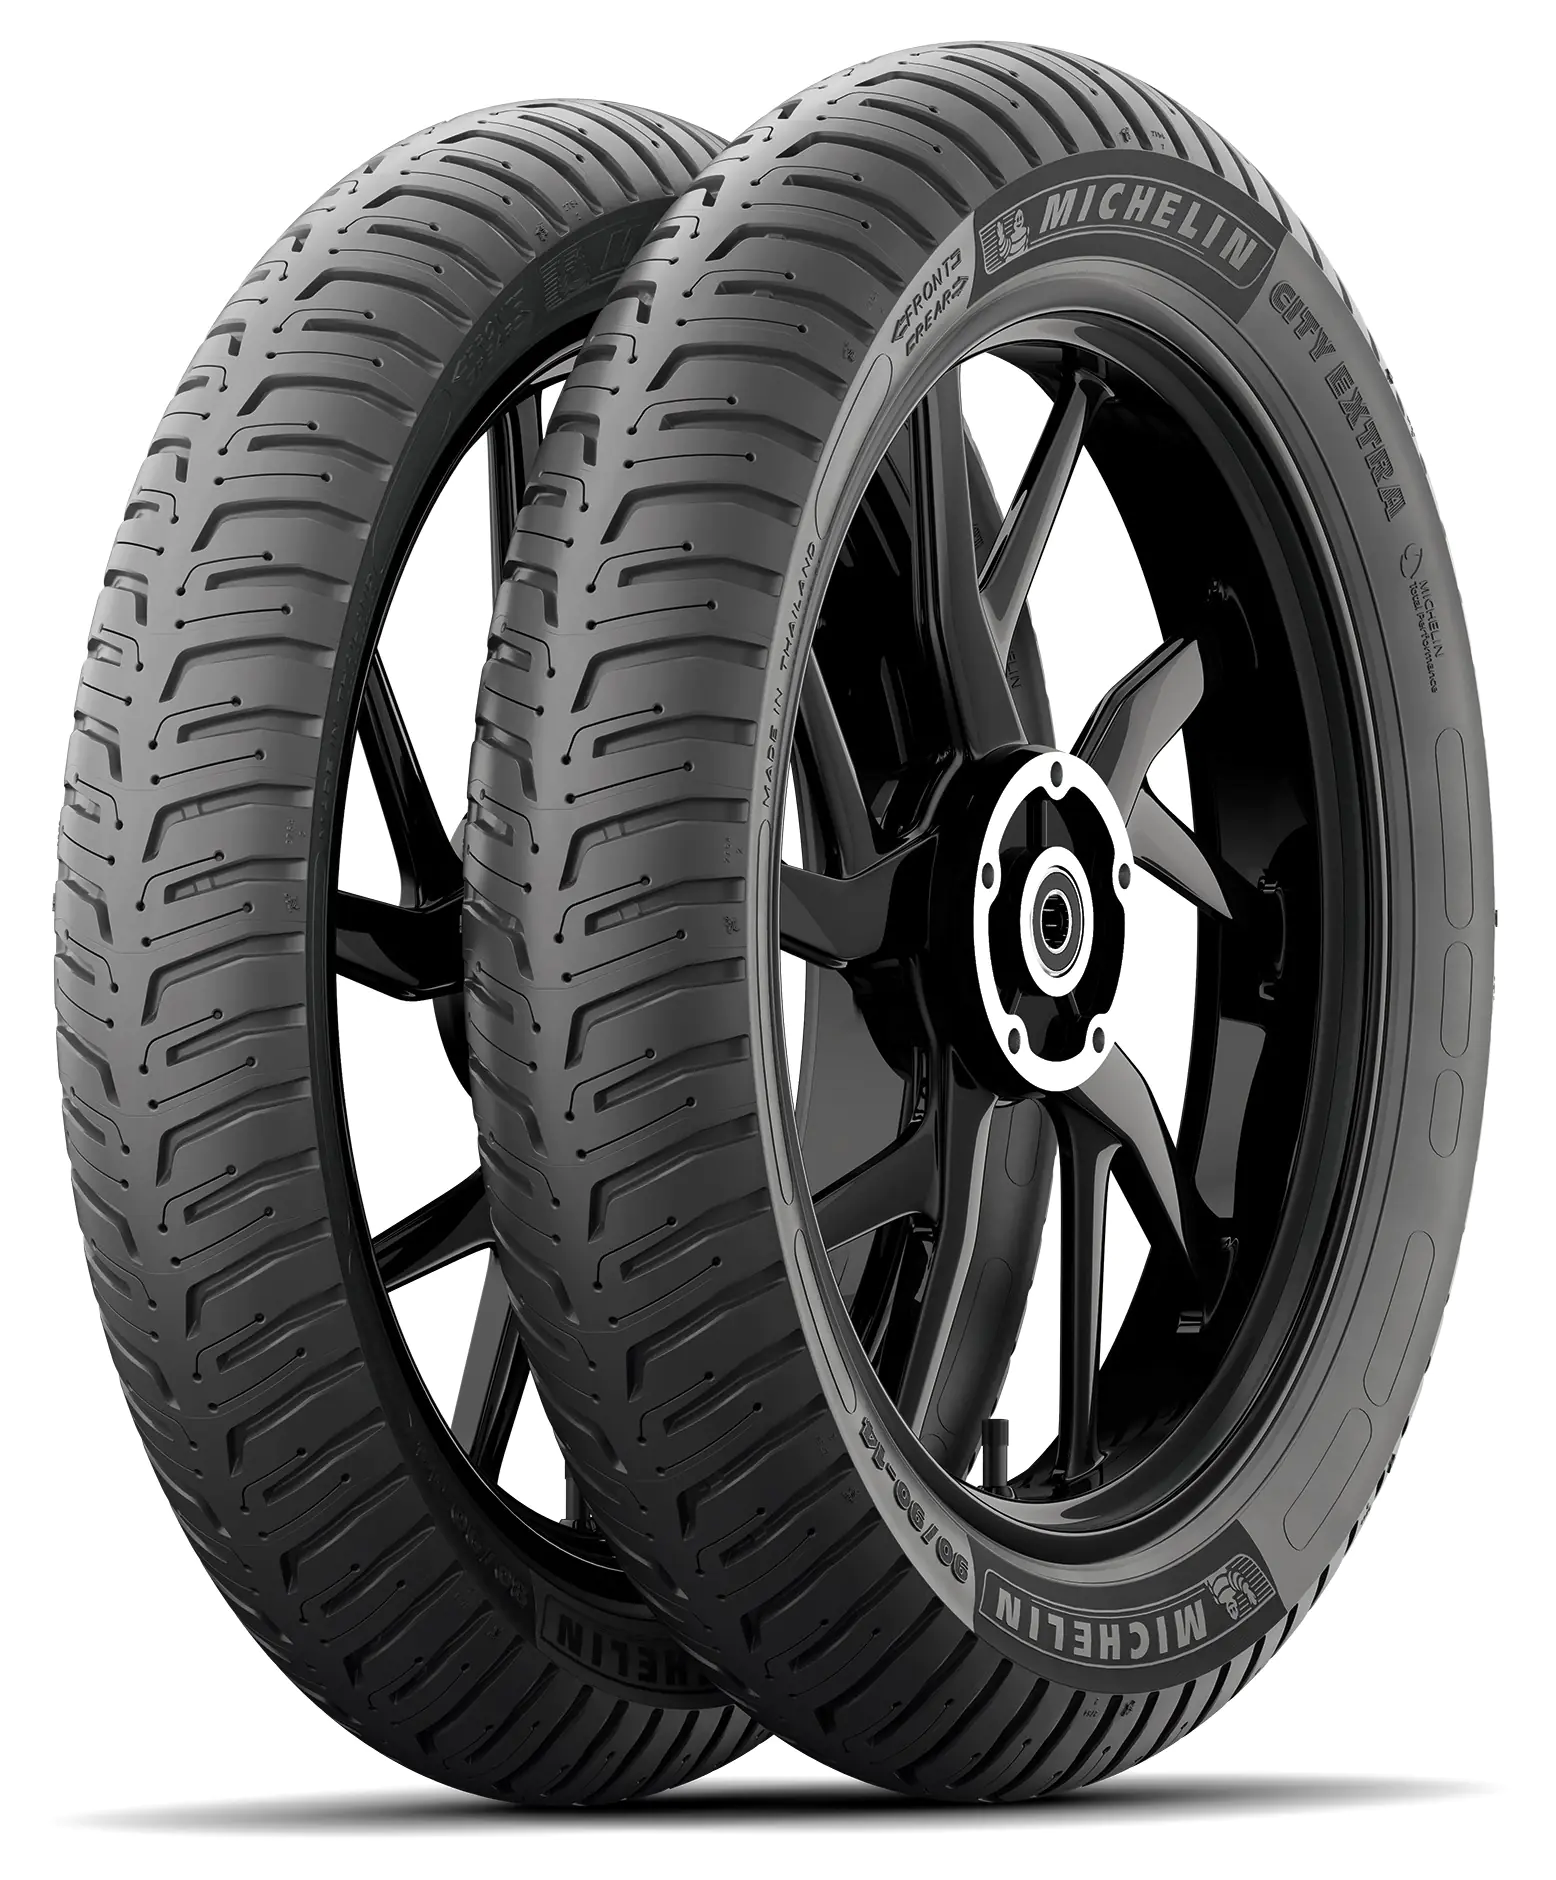 Michelin Michelin 100/80 R16 50S CITY EXTRA pneumatici nuovi Estivo 